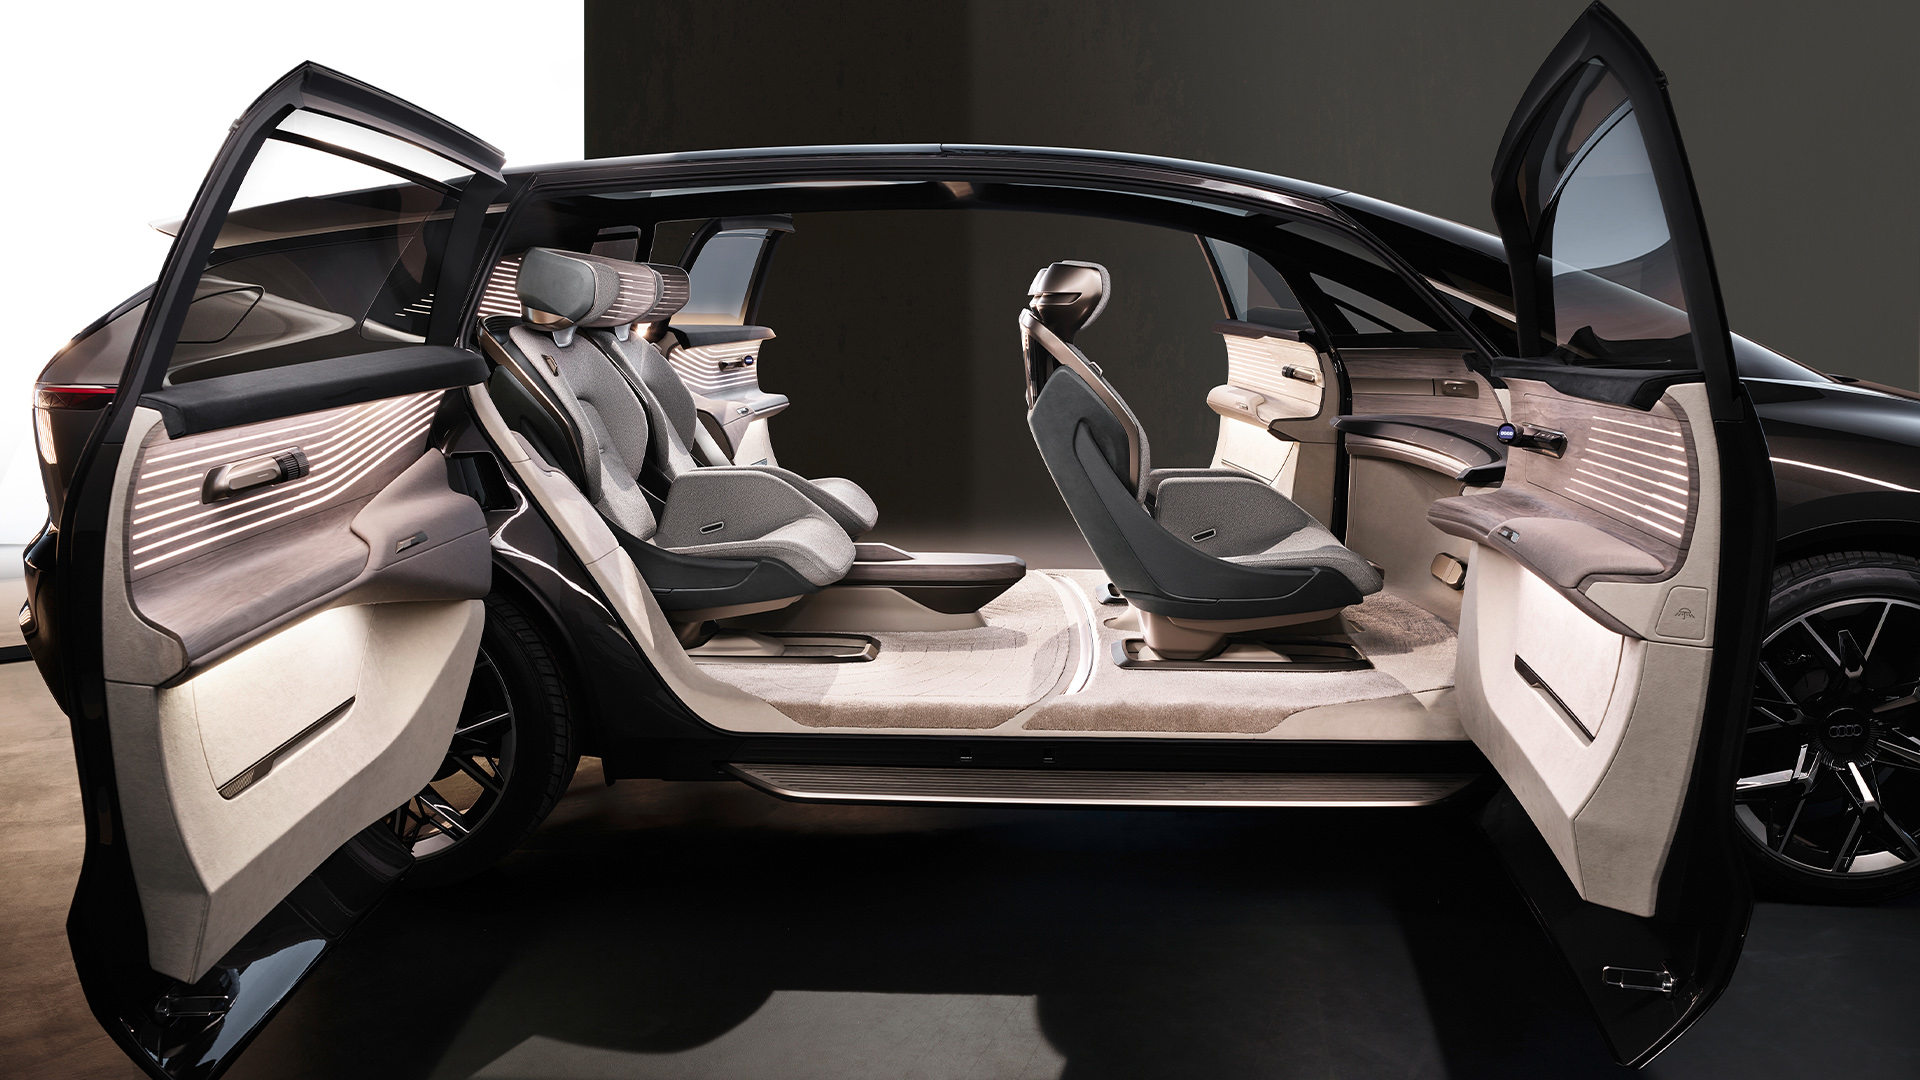 The Audi urbansphere concept{ft_concept-vehicle}